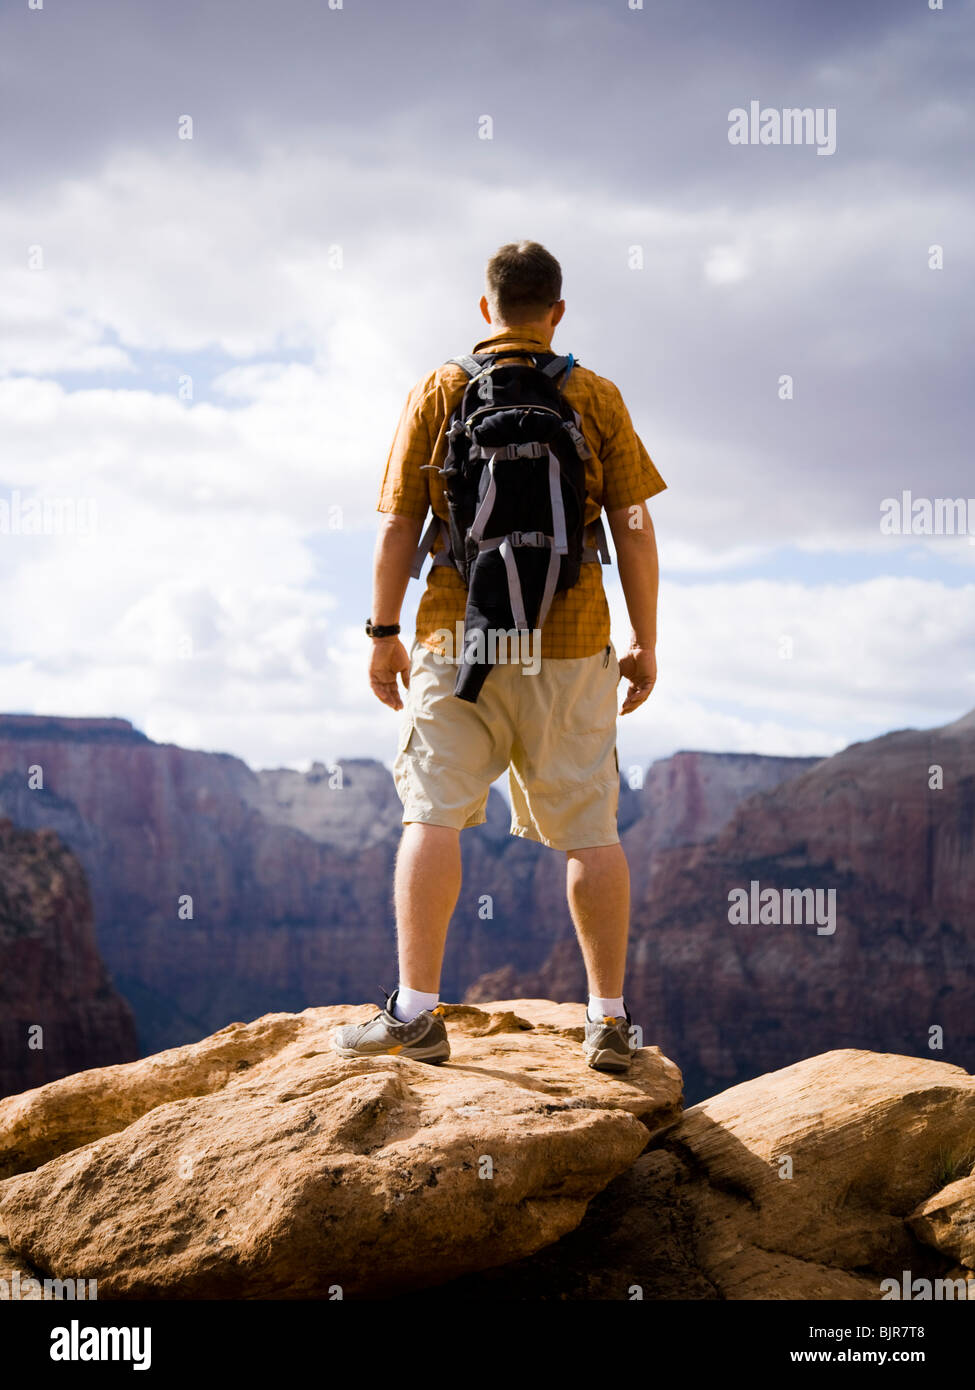 man on a mountain Stock Photo